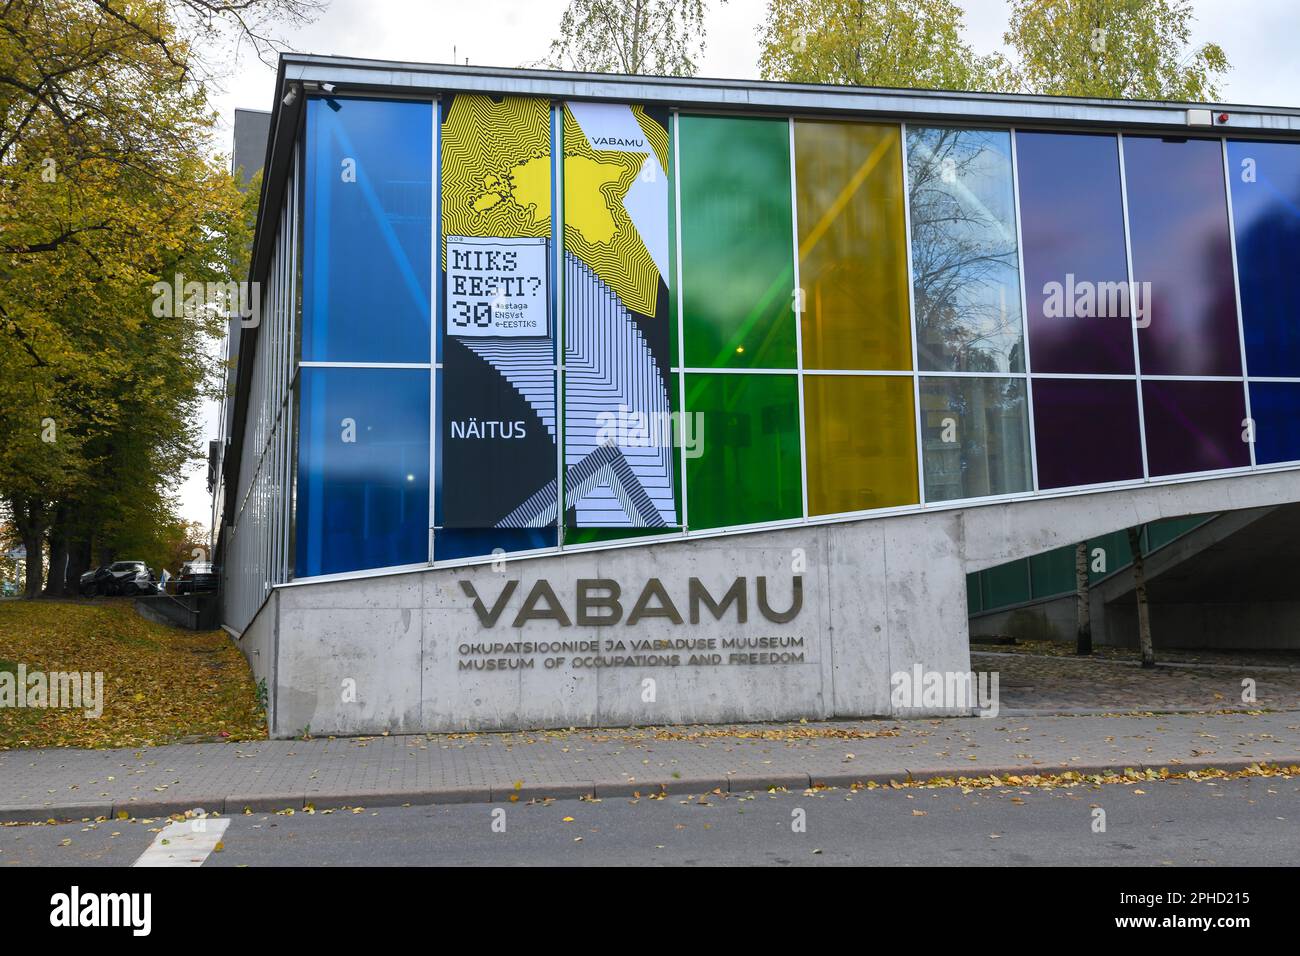 Vabamu Museo delle occupazioni e della libertà a Tallinn. Esterno del Museo di storia estone che racconta le occupazioni dell'Estonia chiamata Vabamu. Foto Stock